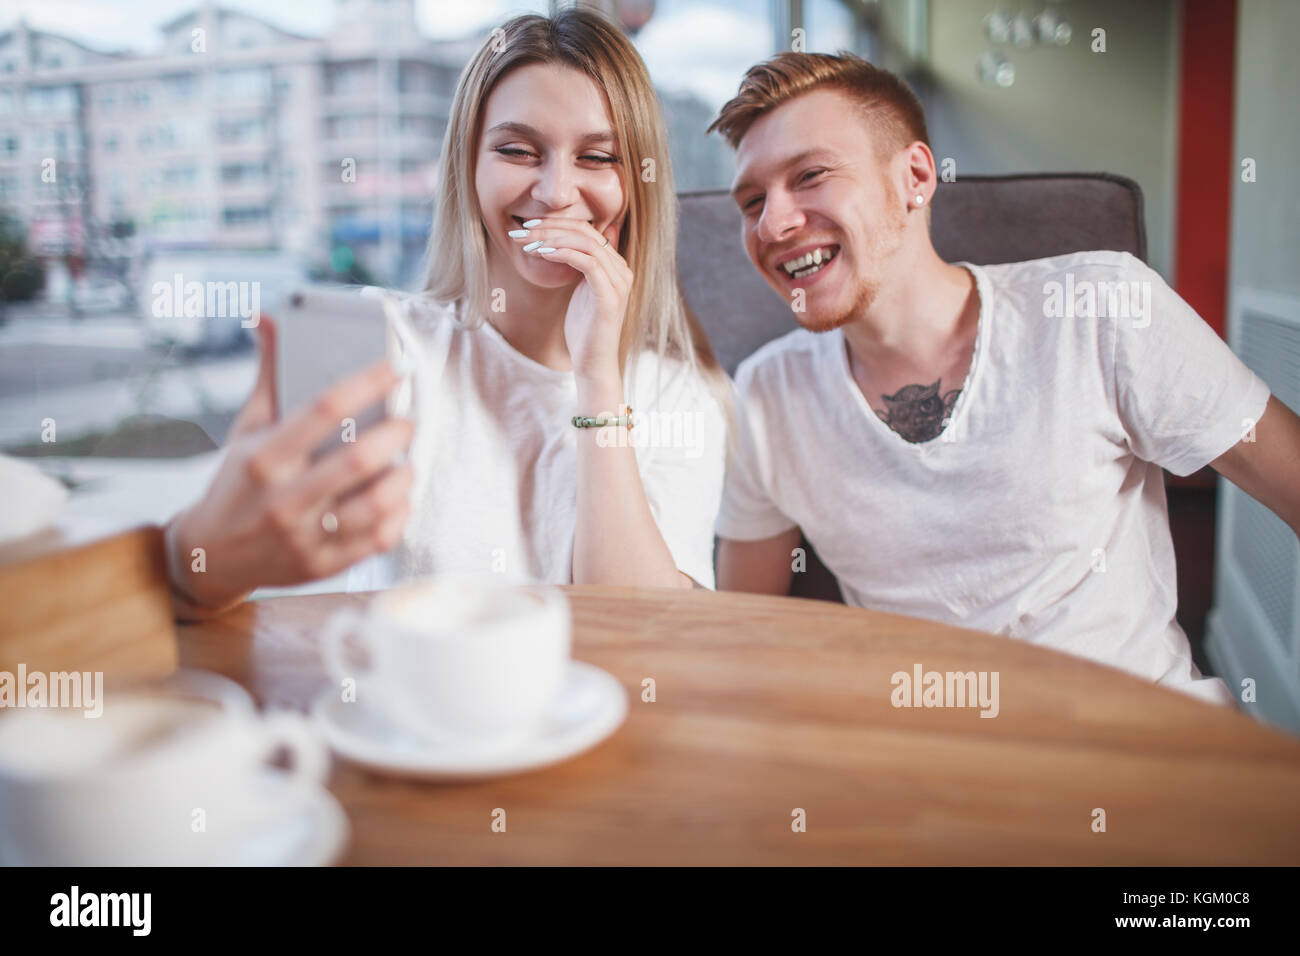 Glückliches junges Paar auf der Suche nach Handy während im Restaurant sitzen Stockfoto